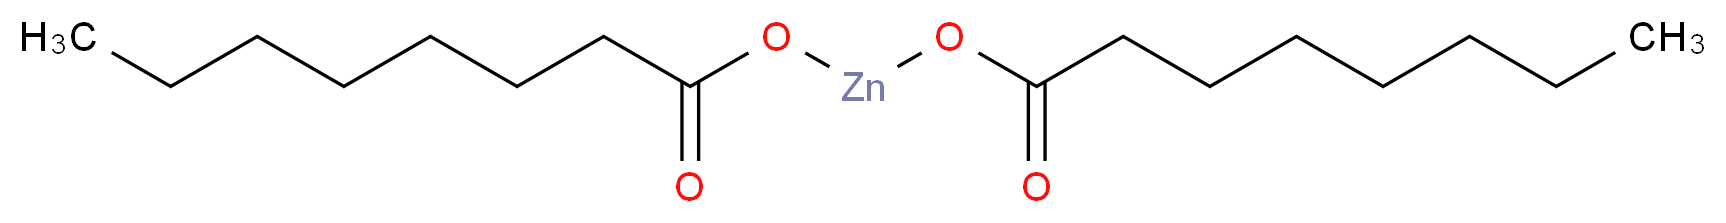 ZINC OCTOATE_Molecular_structure_CAS_557-09-5)